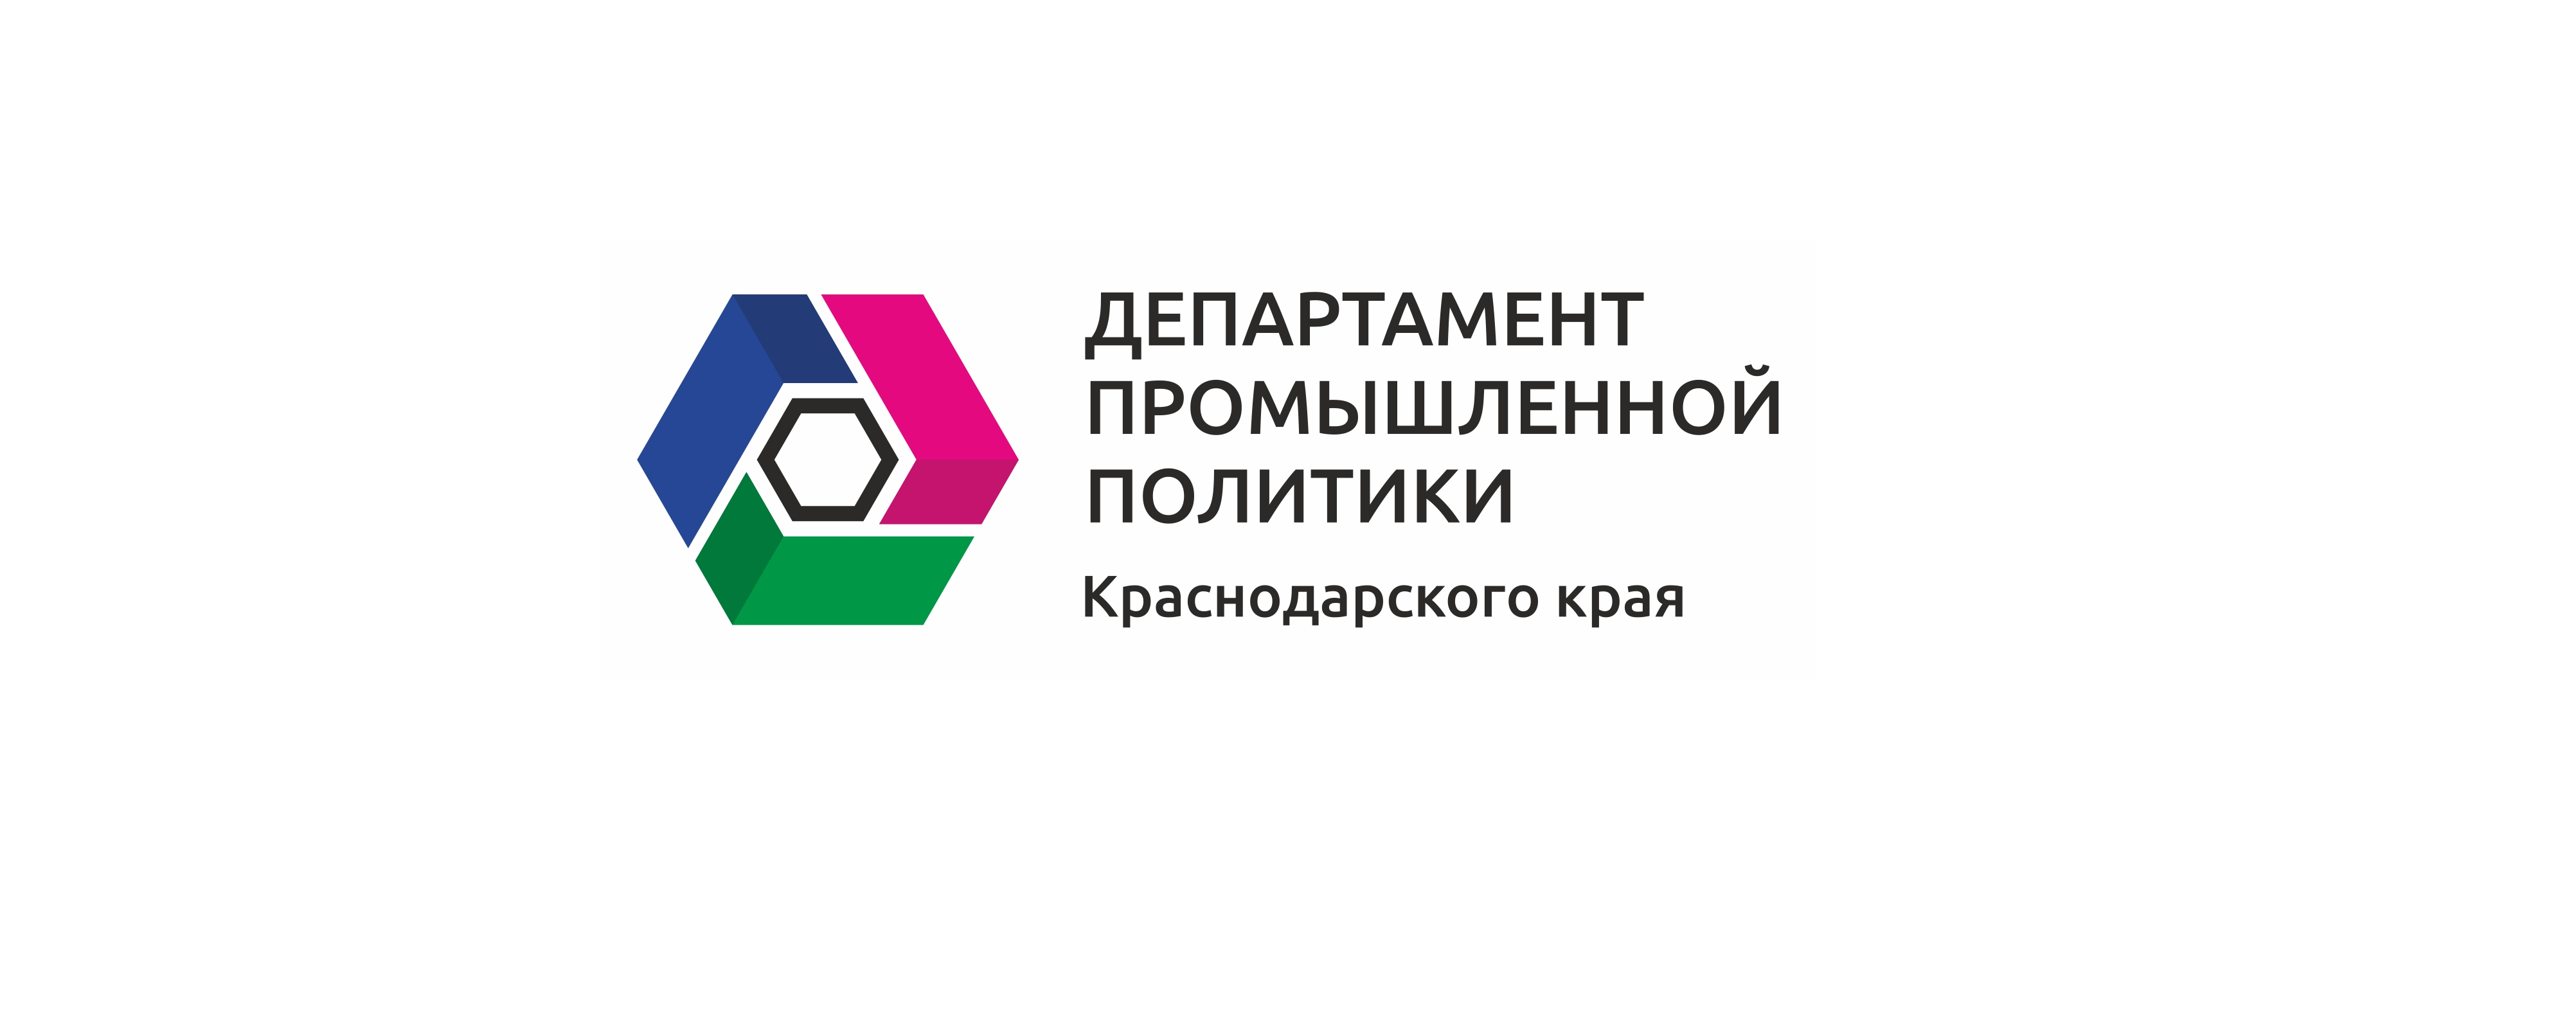 Департамент промышленной политики Краснодарского края сообщает